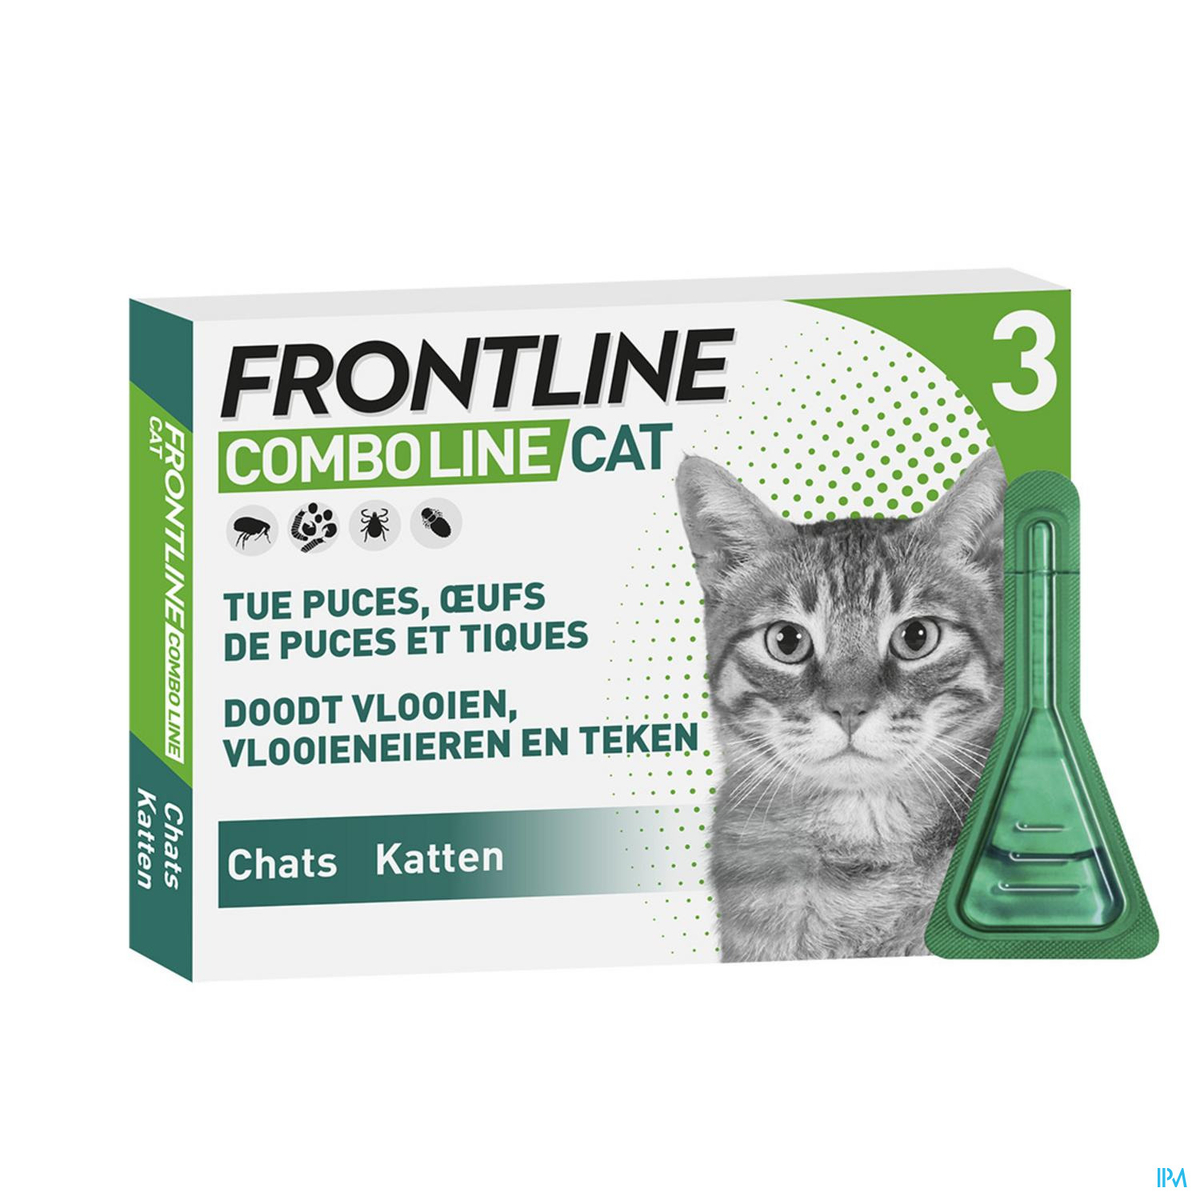 Frontline Combo Line Cat 3p Medicaments Pour Chat